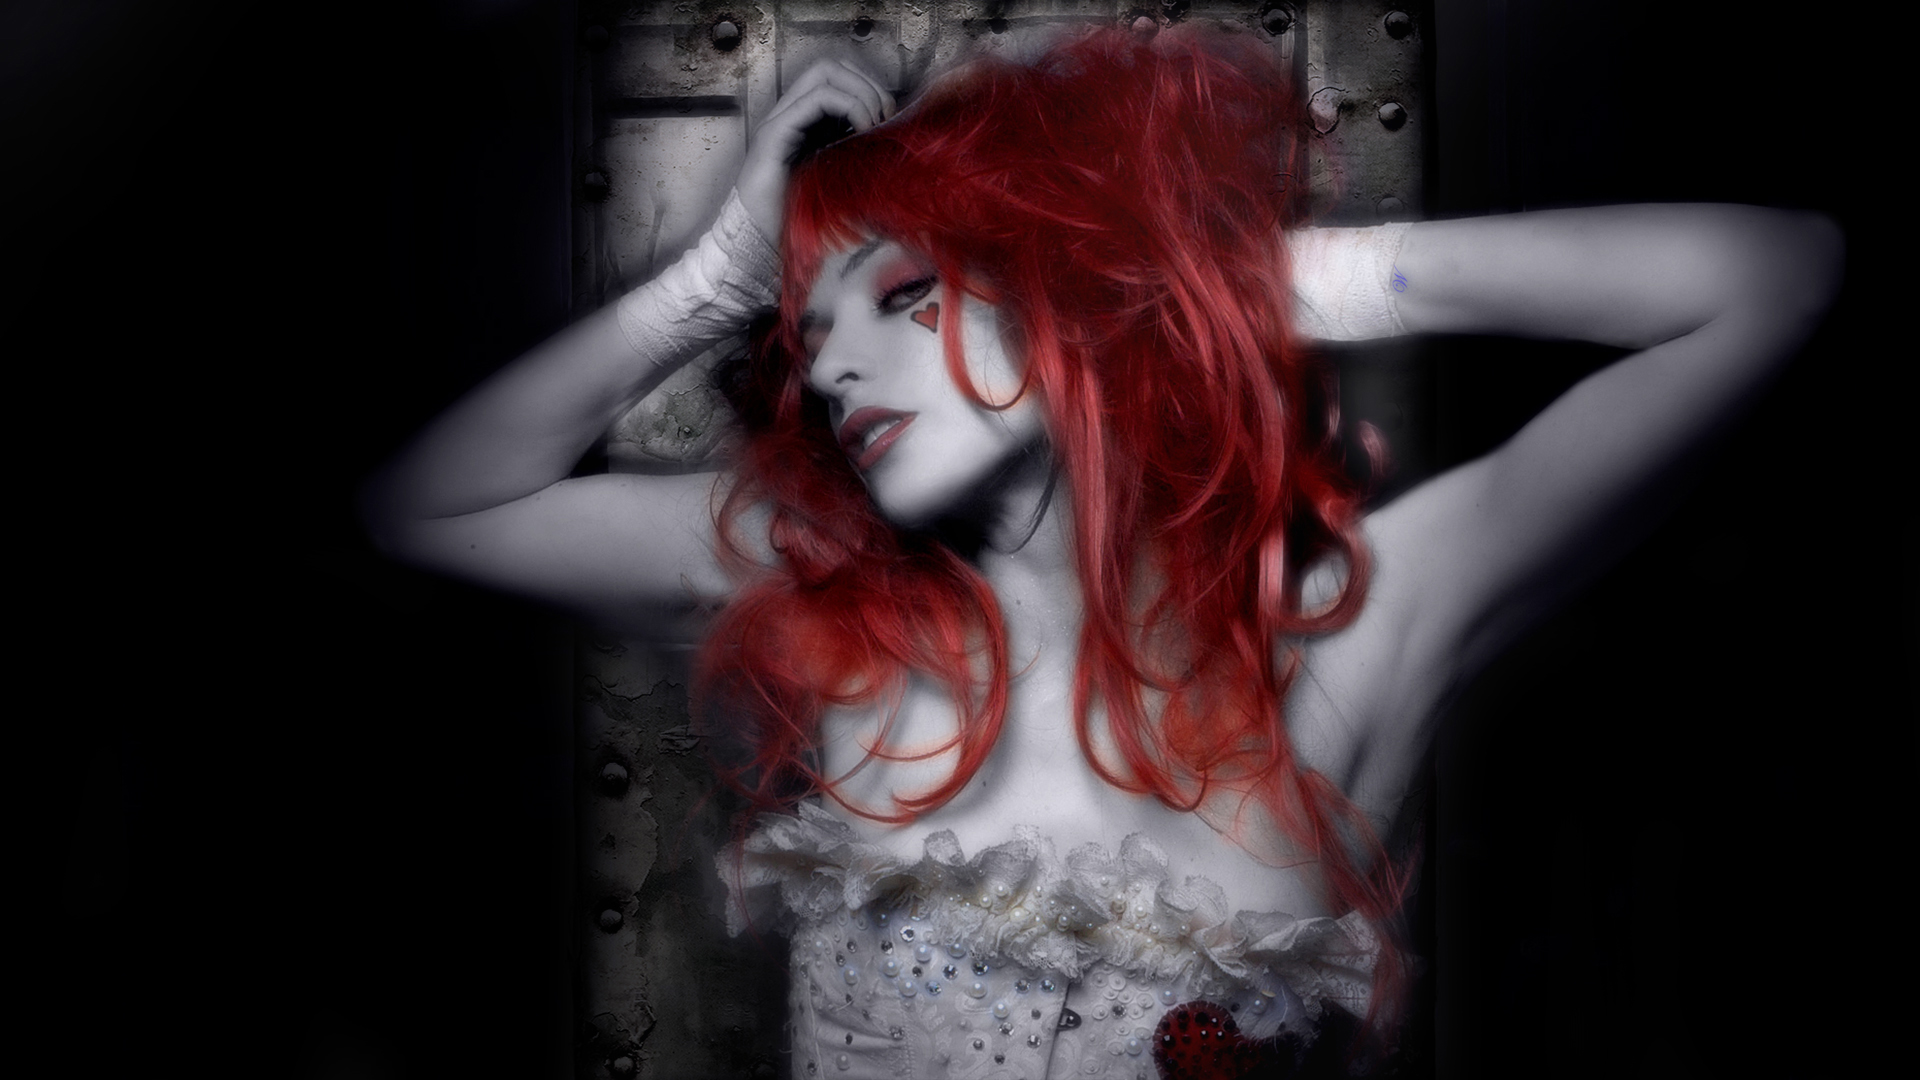 Emilie Autumn Wallpapers